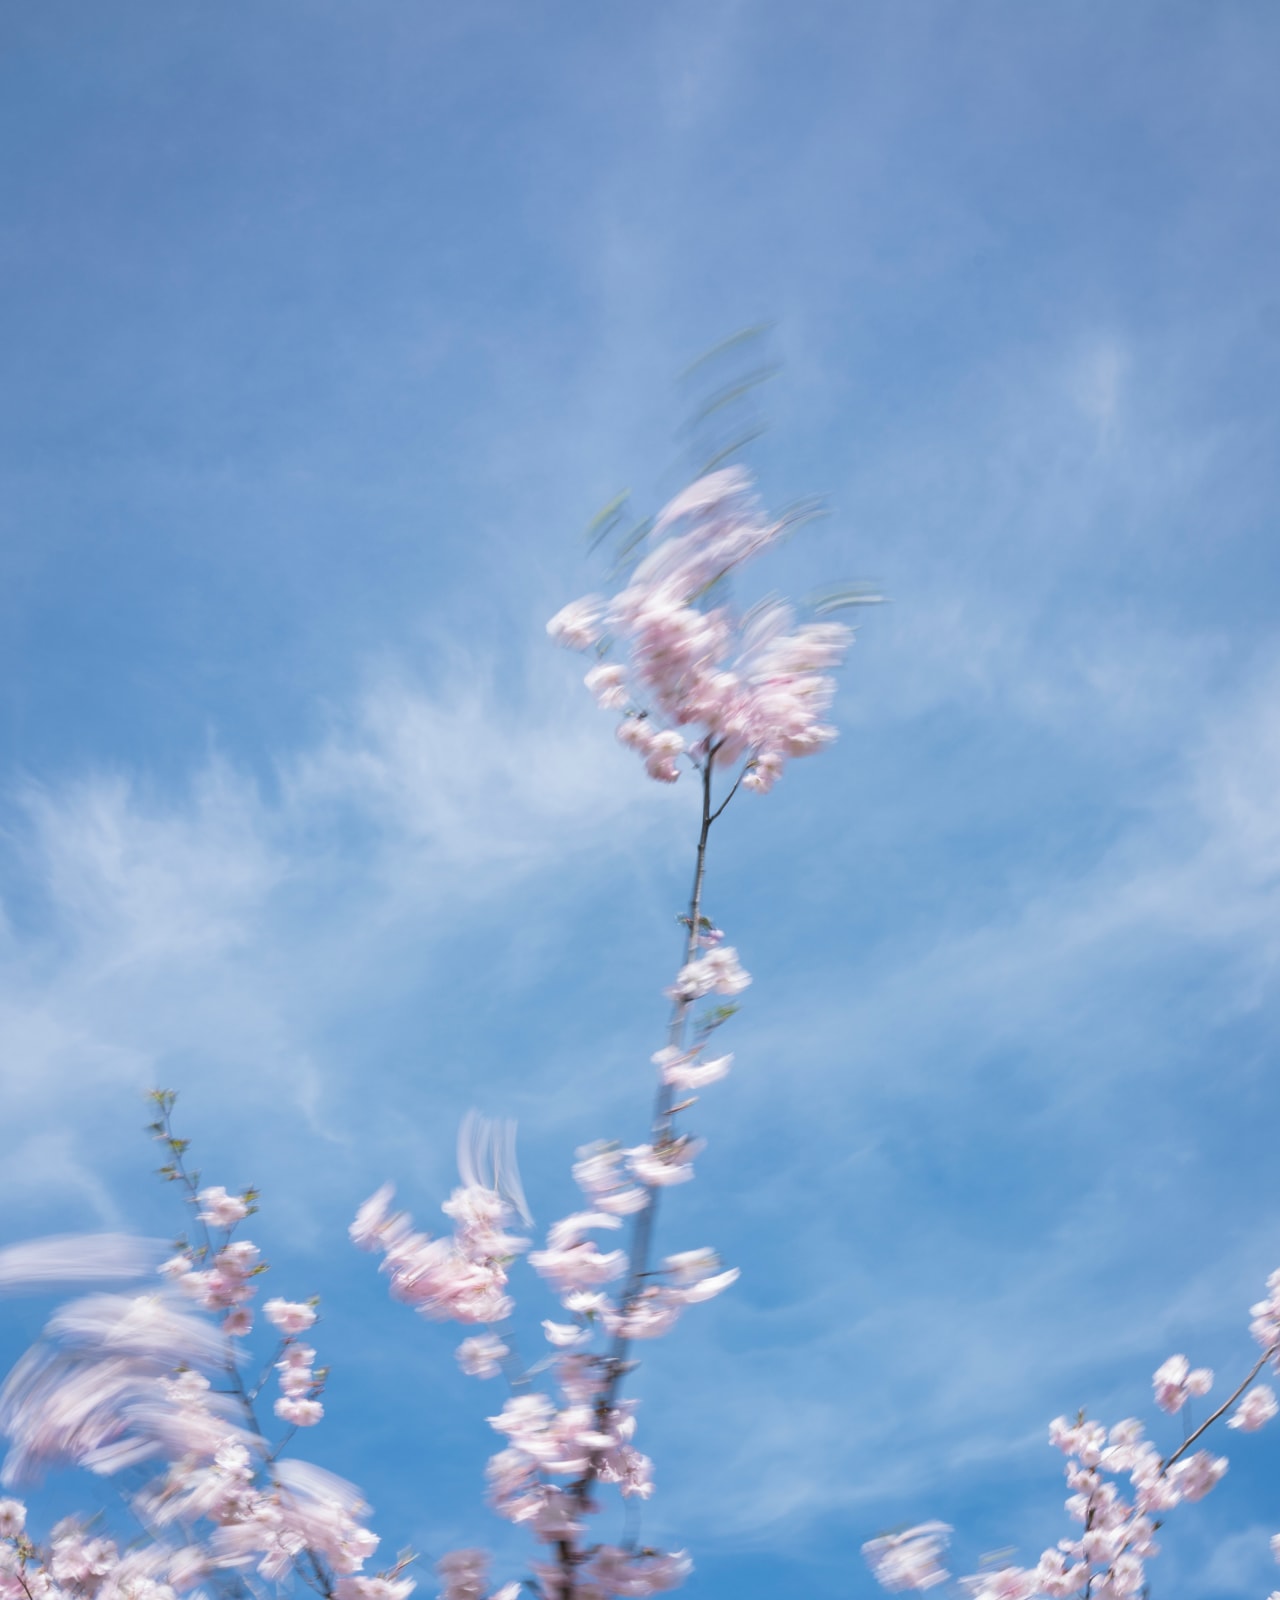 Cig Harvey, Cherry Blossom, 2019